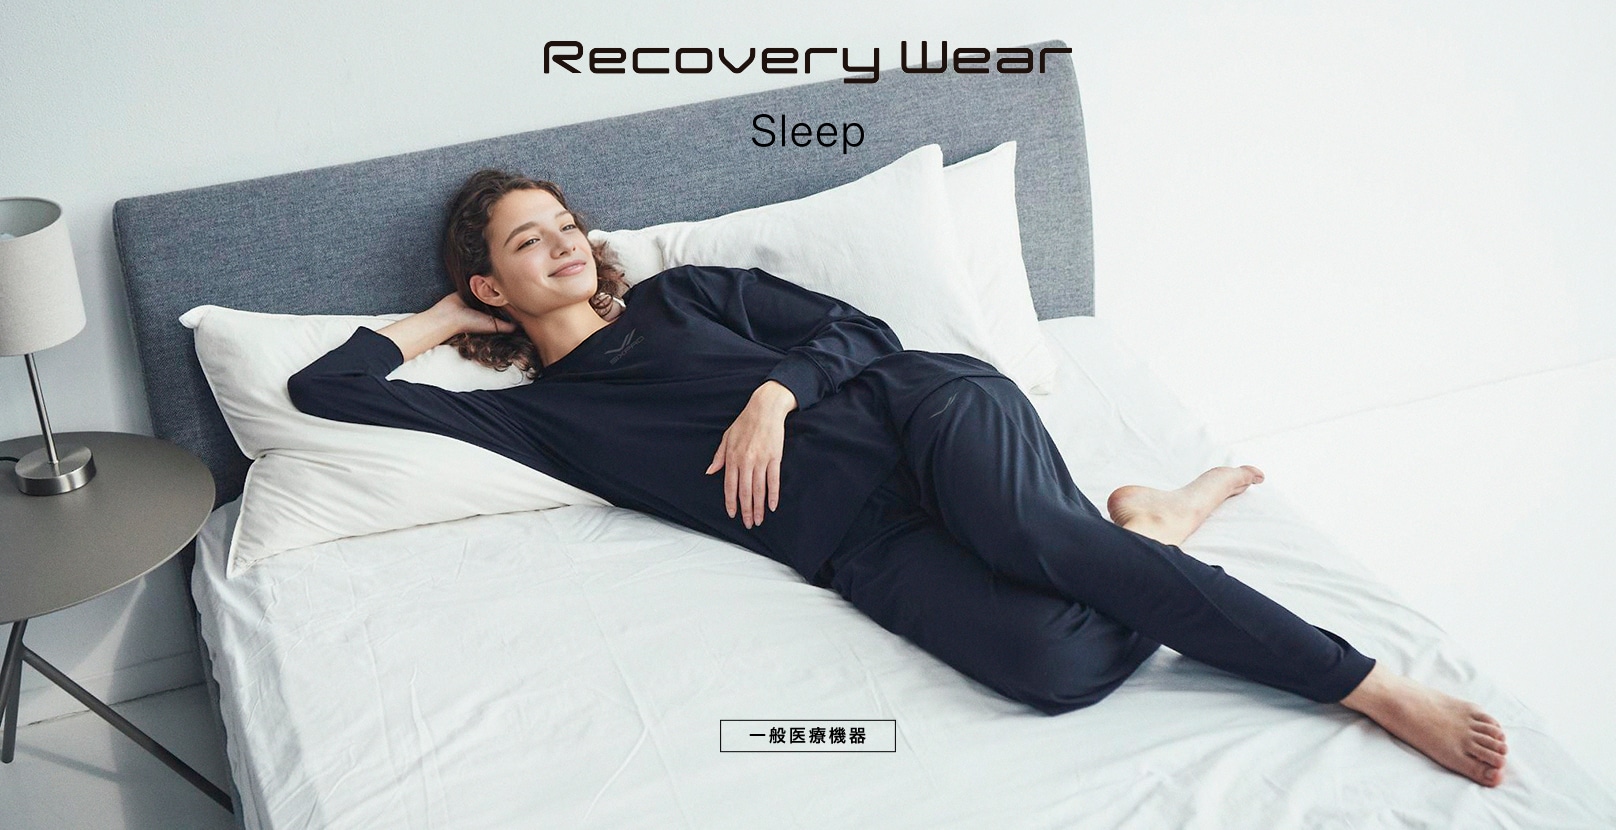 Recovery Wear Sleep ［一般医療機器］